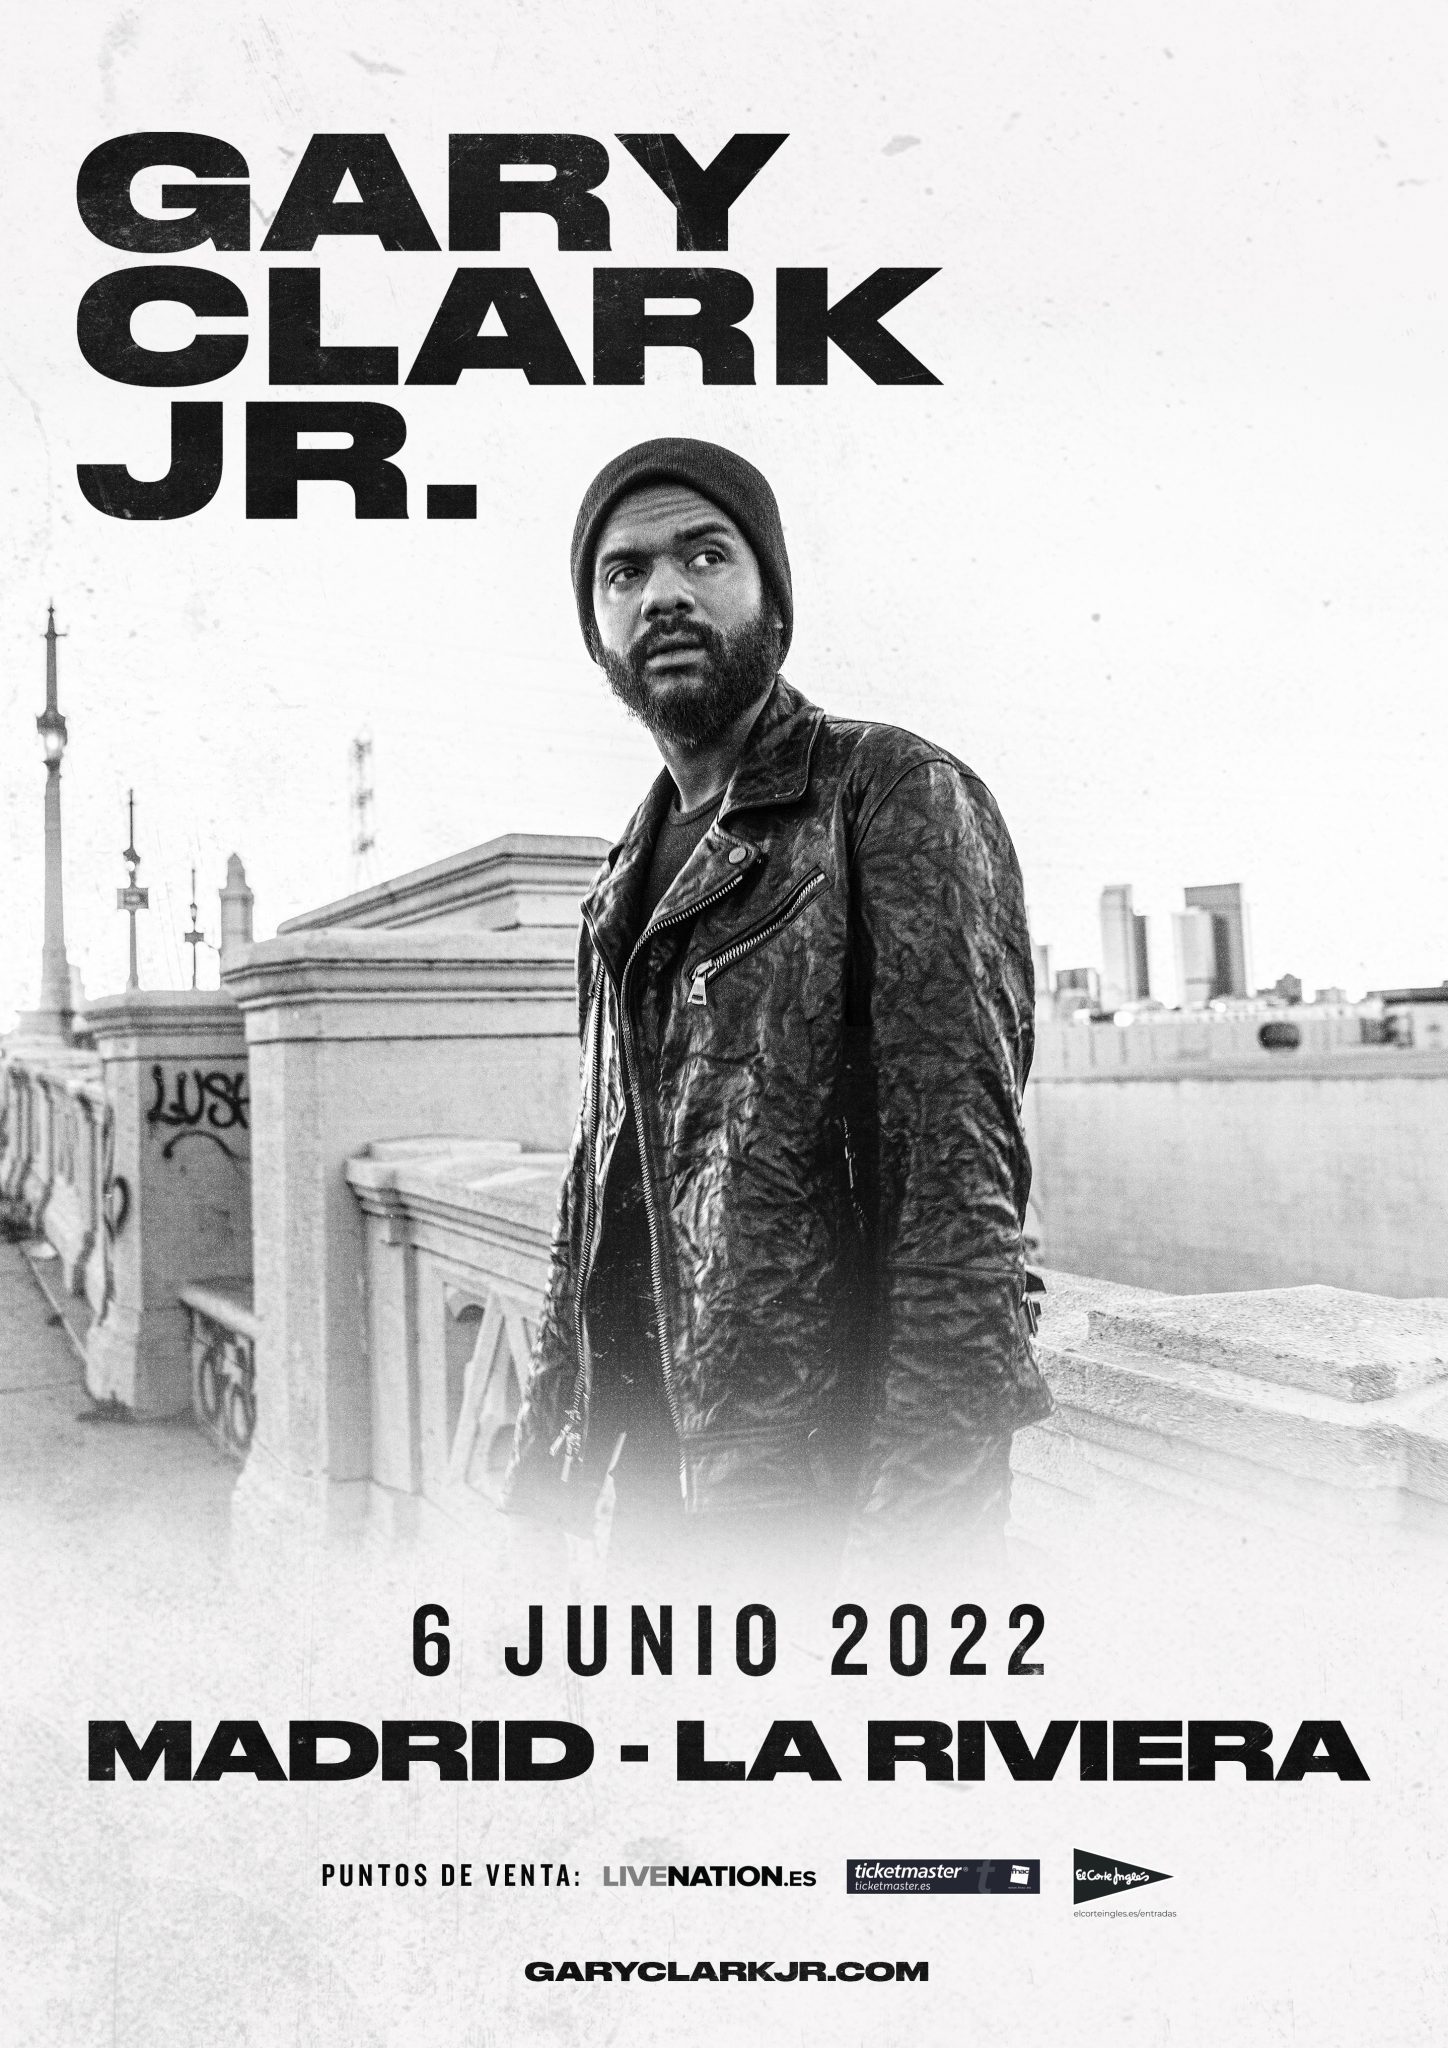 GARY CLARK JR anuncia concierto en Madrid